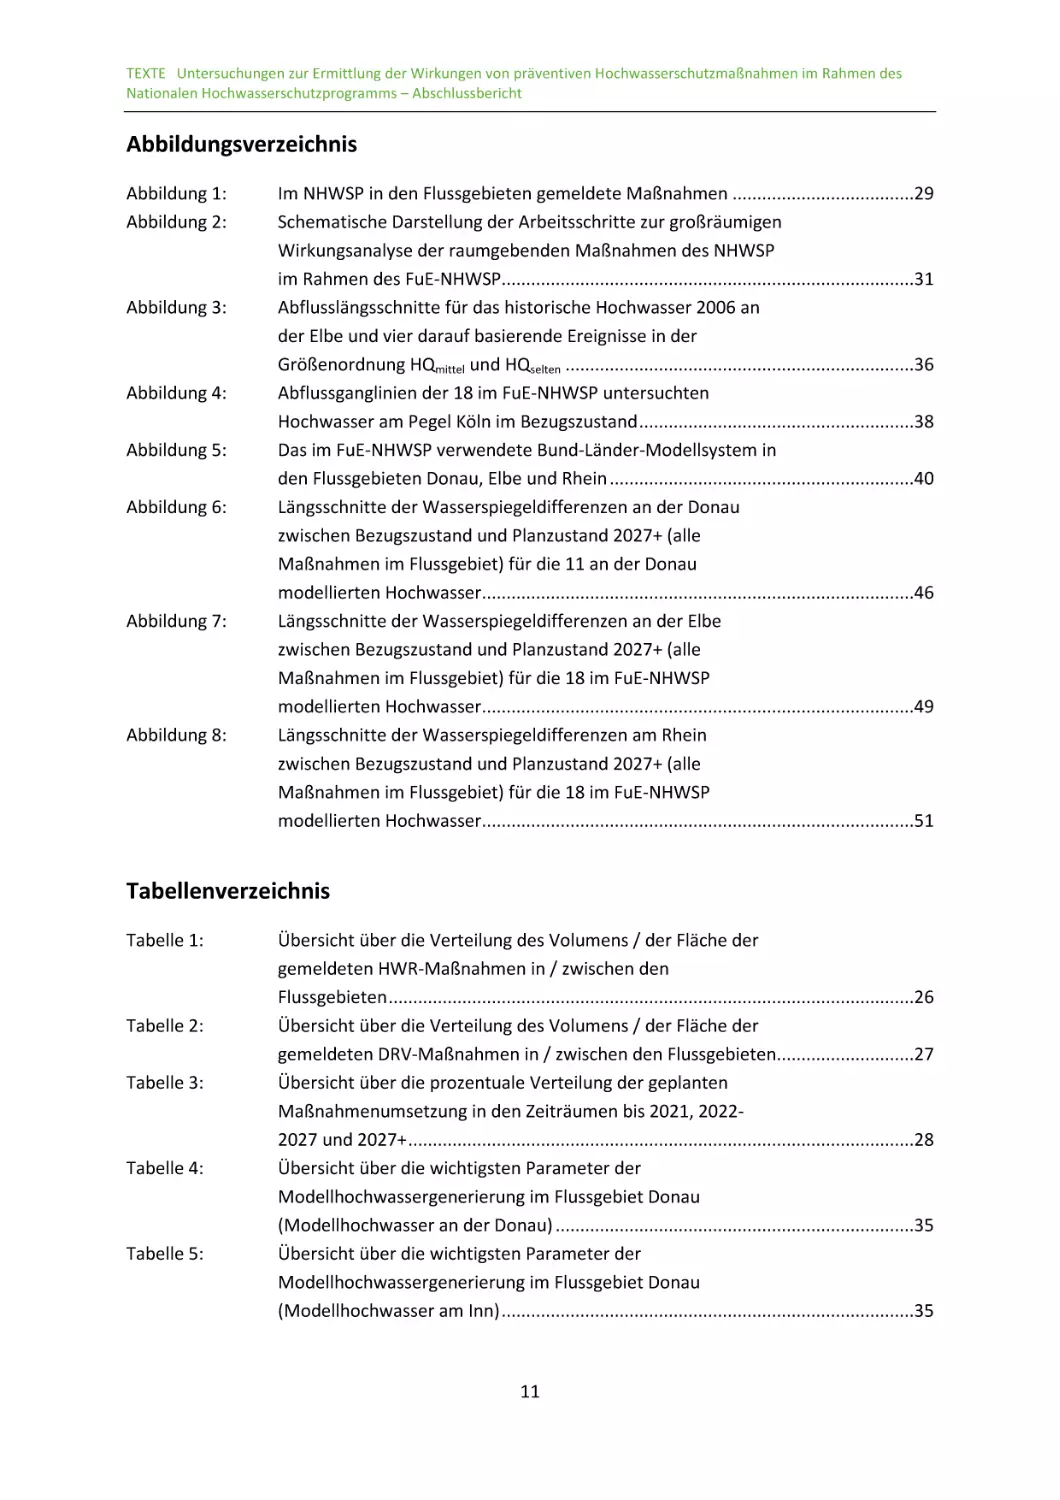 Abbildungsverzeichnis
Tabellenverzeichnis